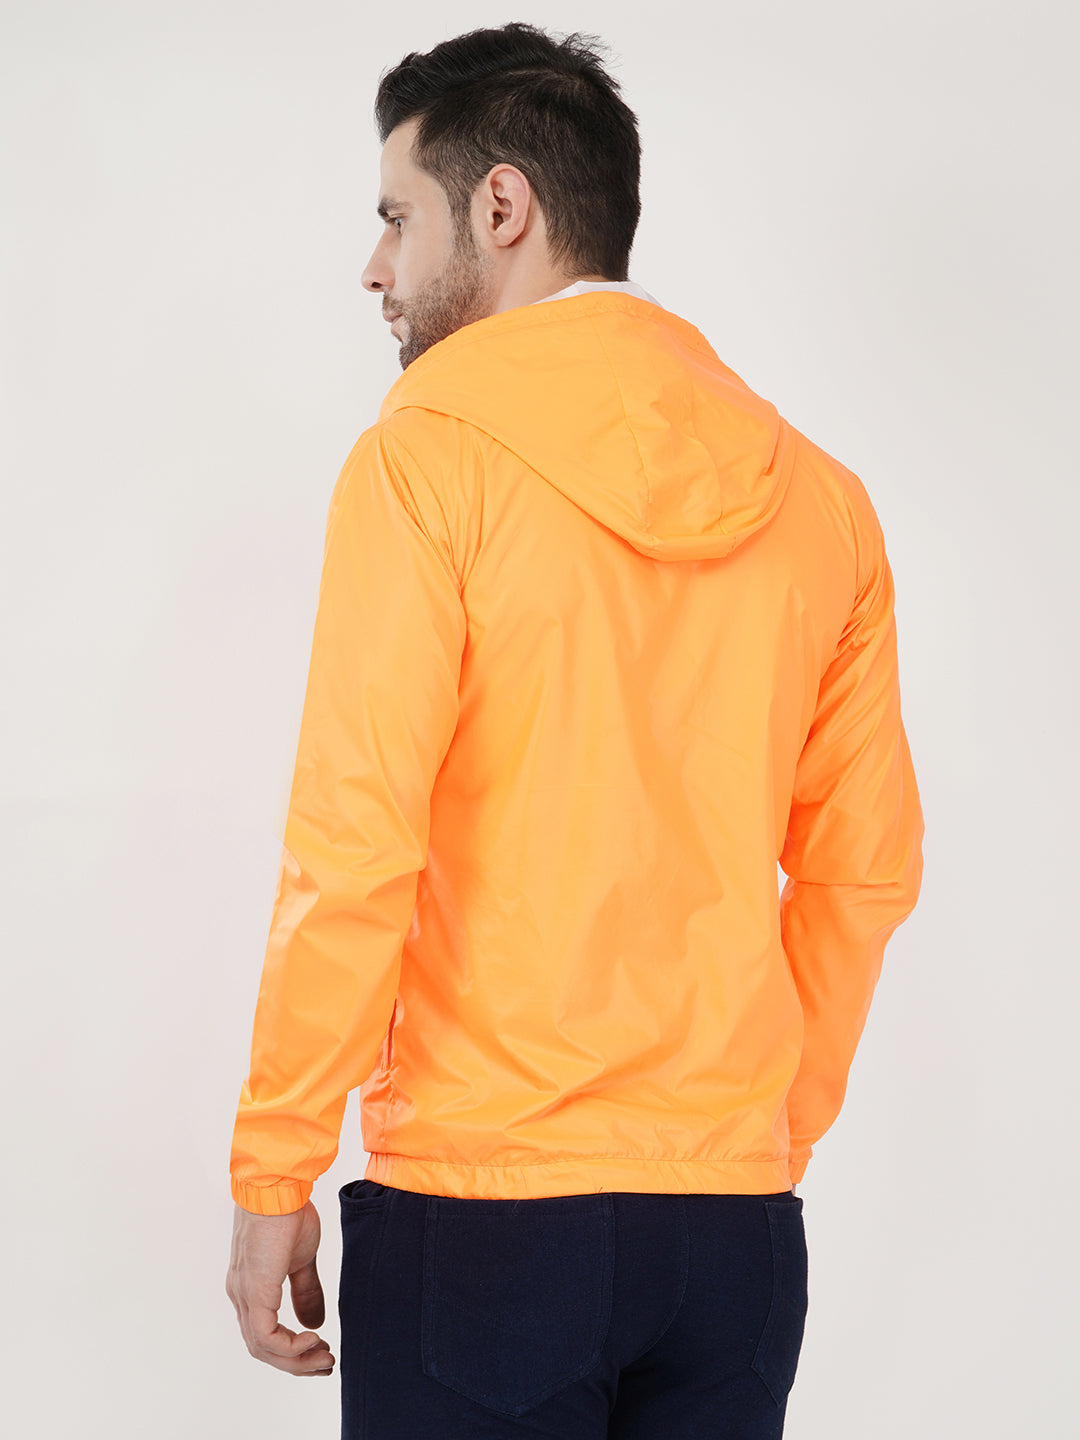 orange-jacket